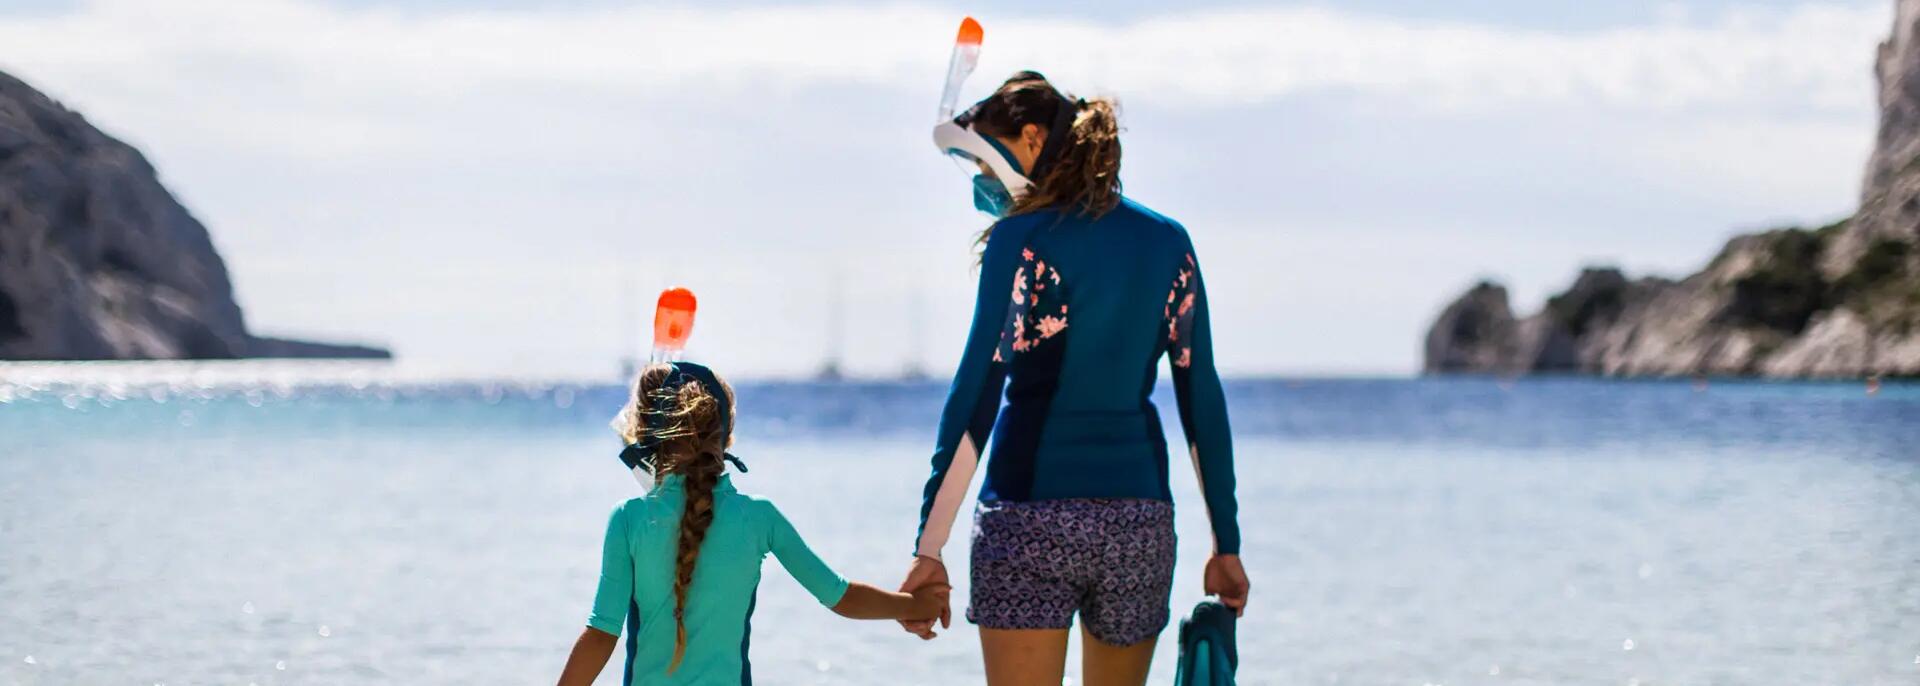 kobieta i dziewczynka idące do wody w strojach pływackich z maskami do snorkelingu i płetwami pływackimi